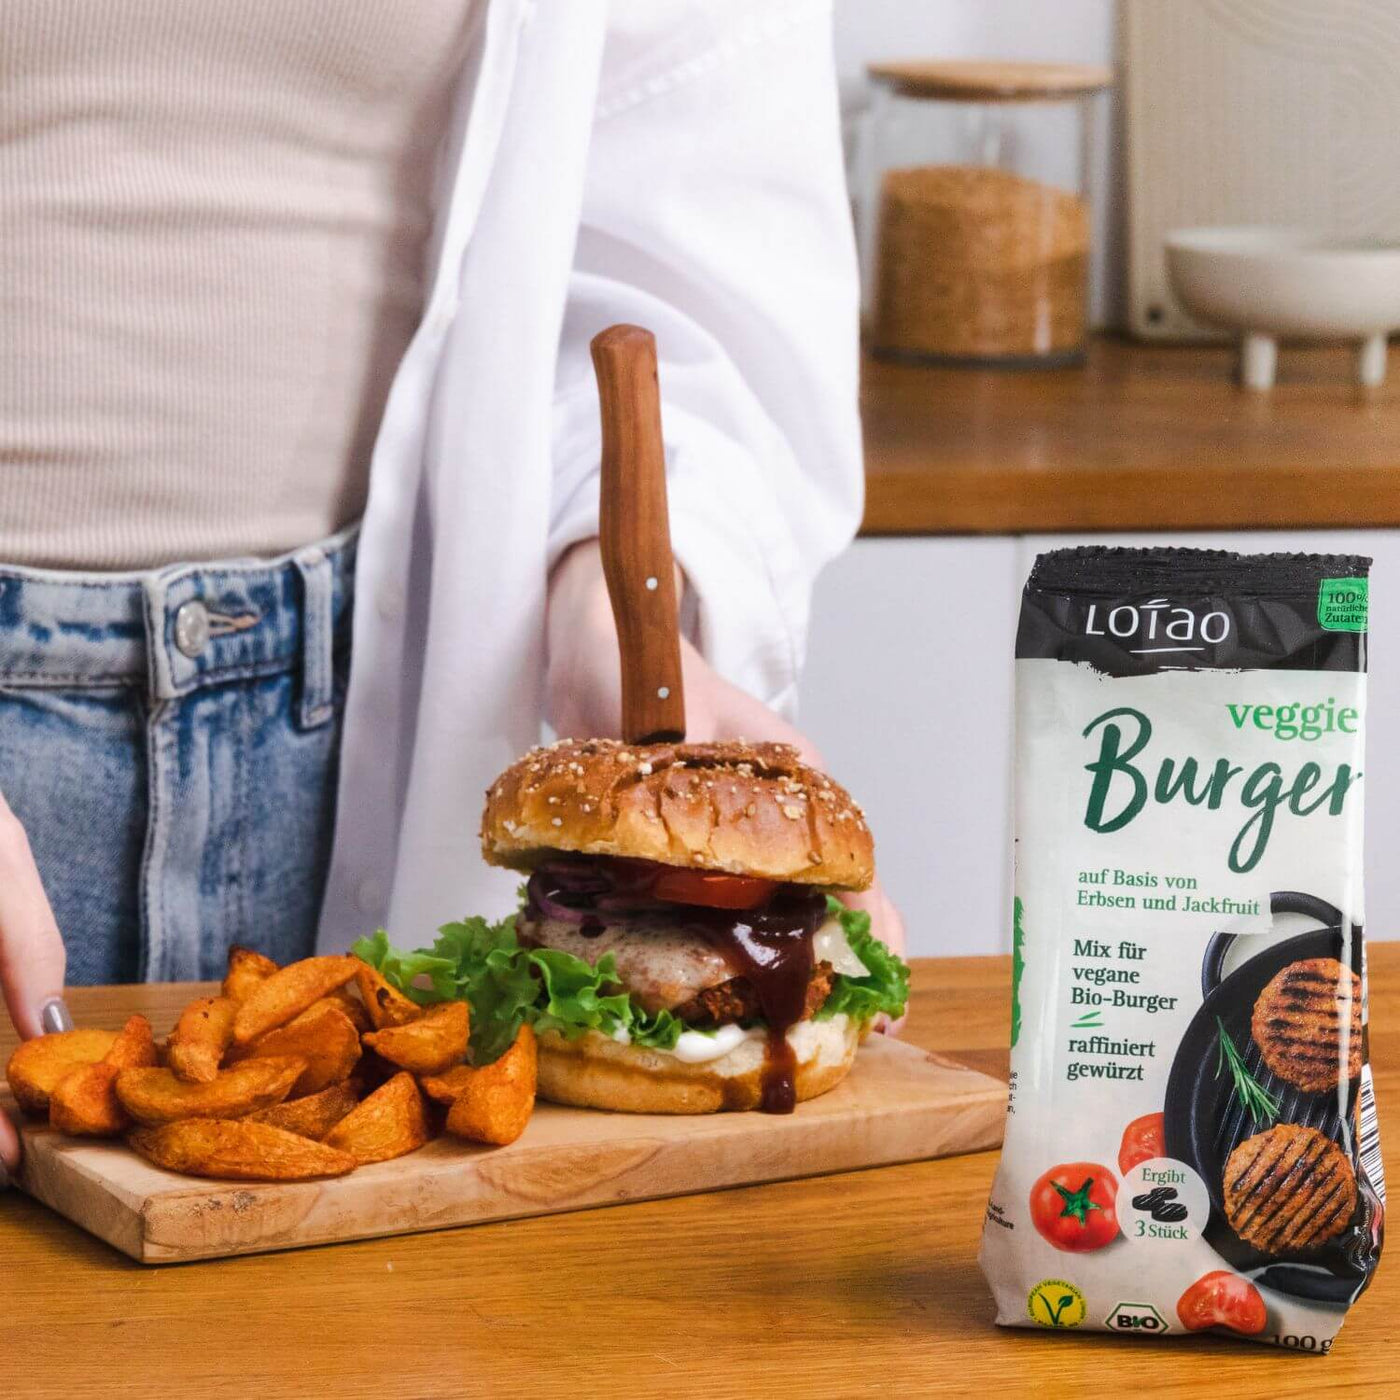 Lotao Veggie Burger Mix für vegane Bio-Burgerpatties, hier Burger mit Kartoffelspalten angerichtet